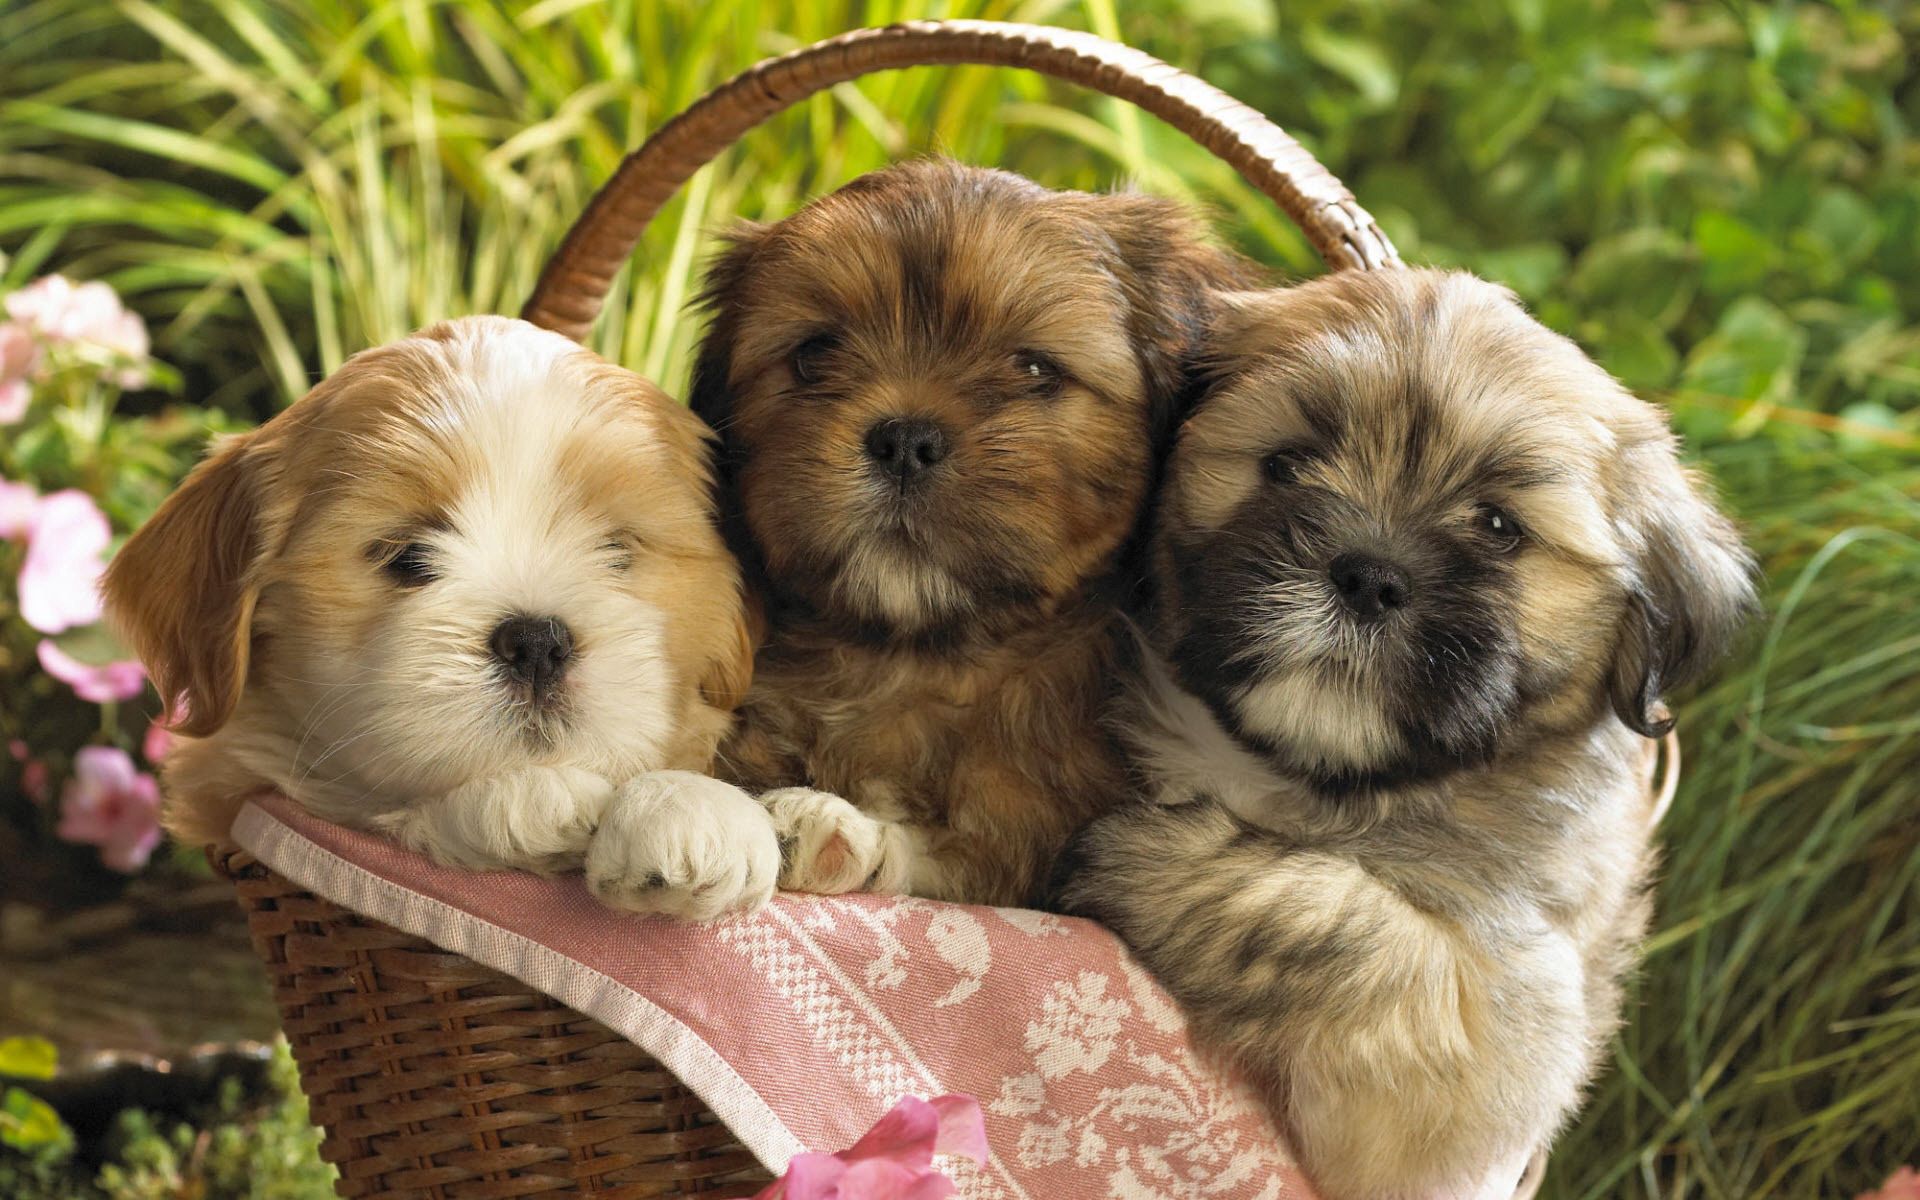 animals, grass, sit, basket, three, puppies